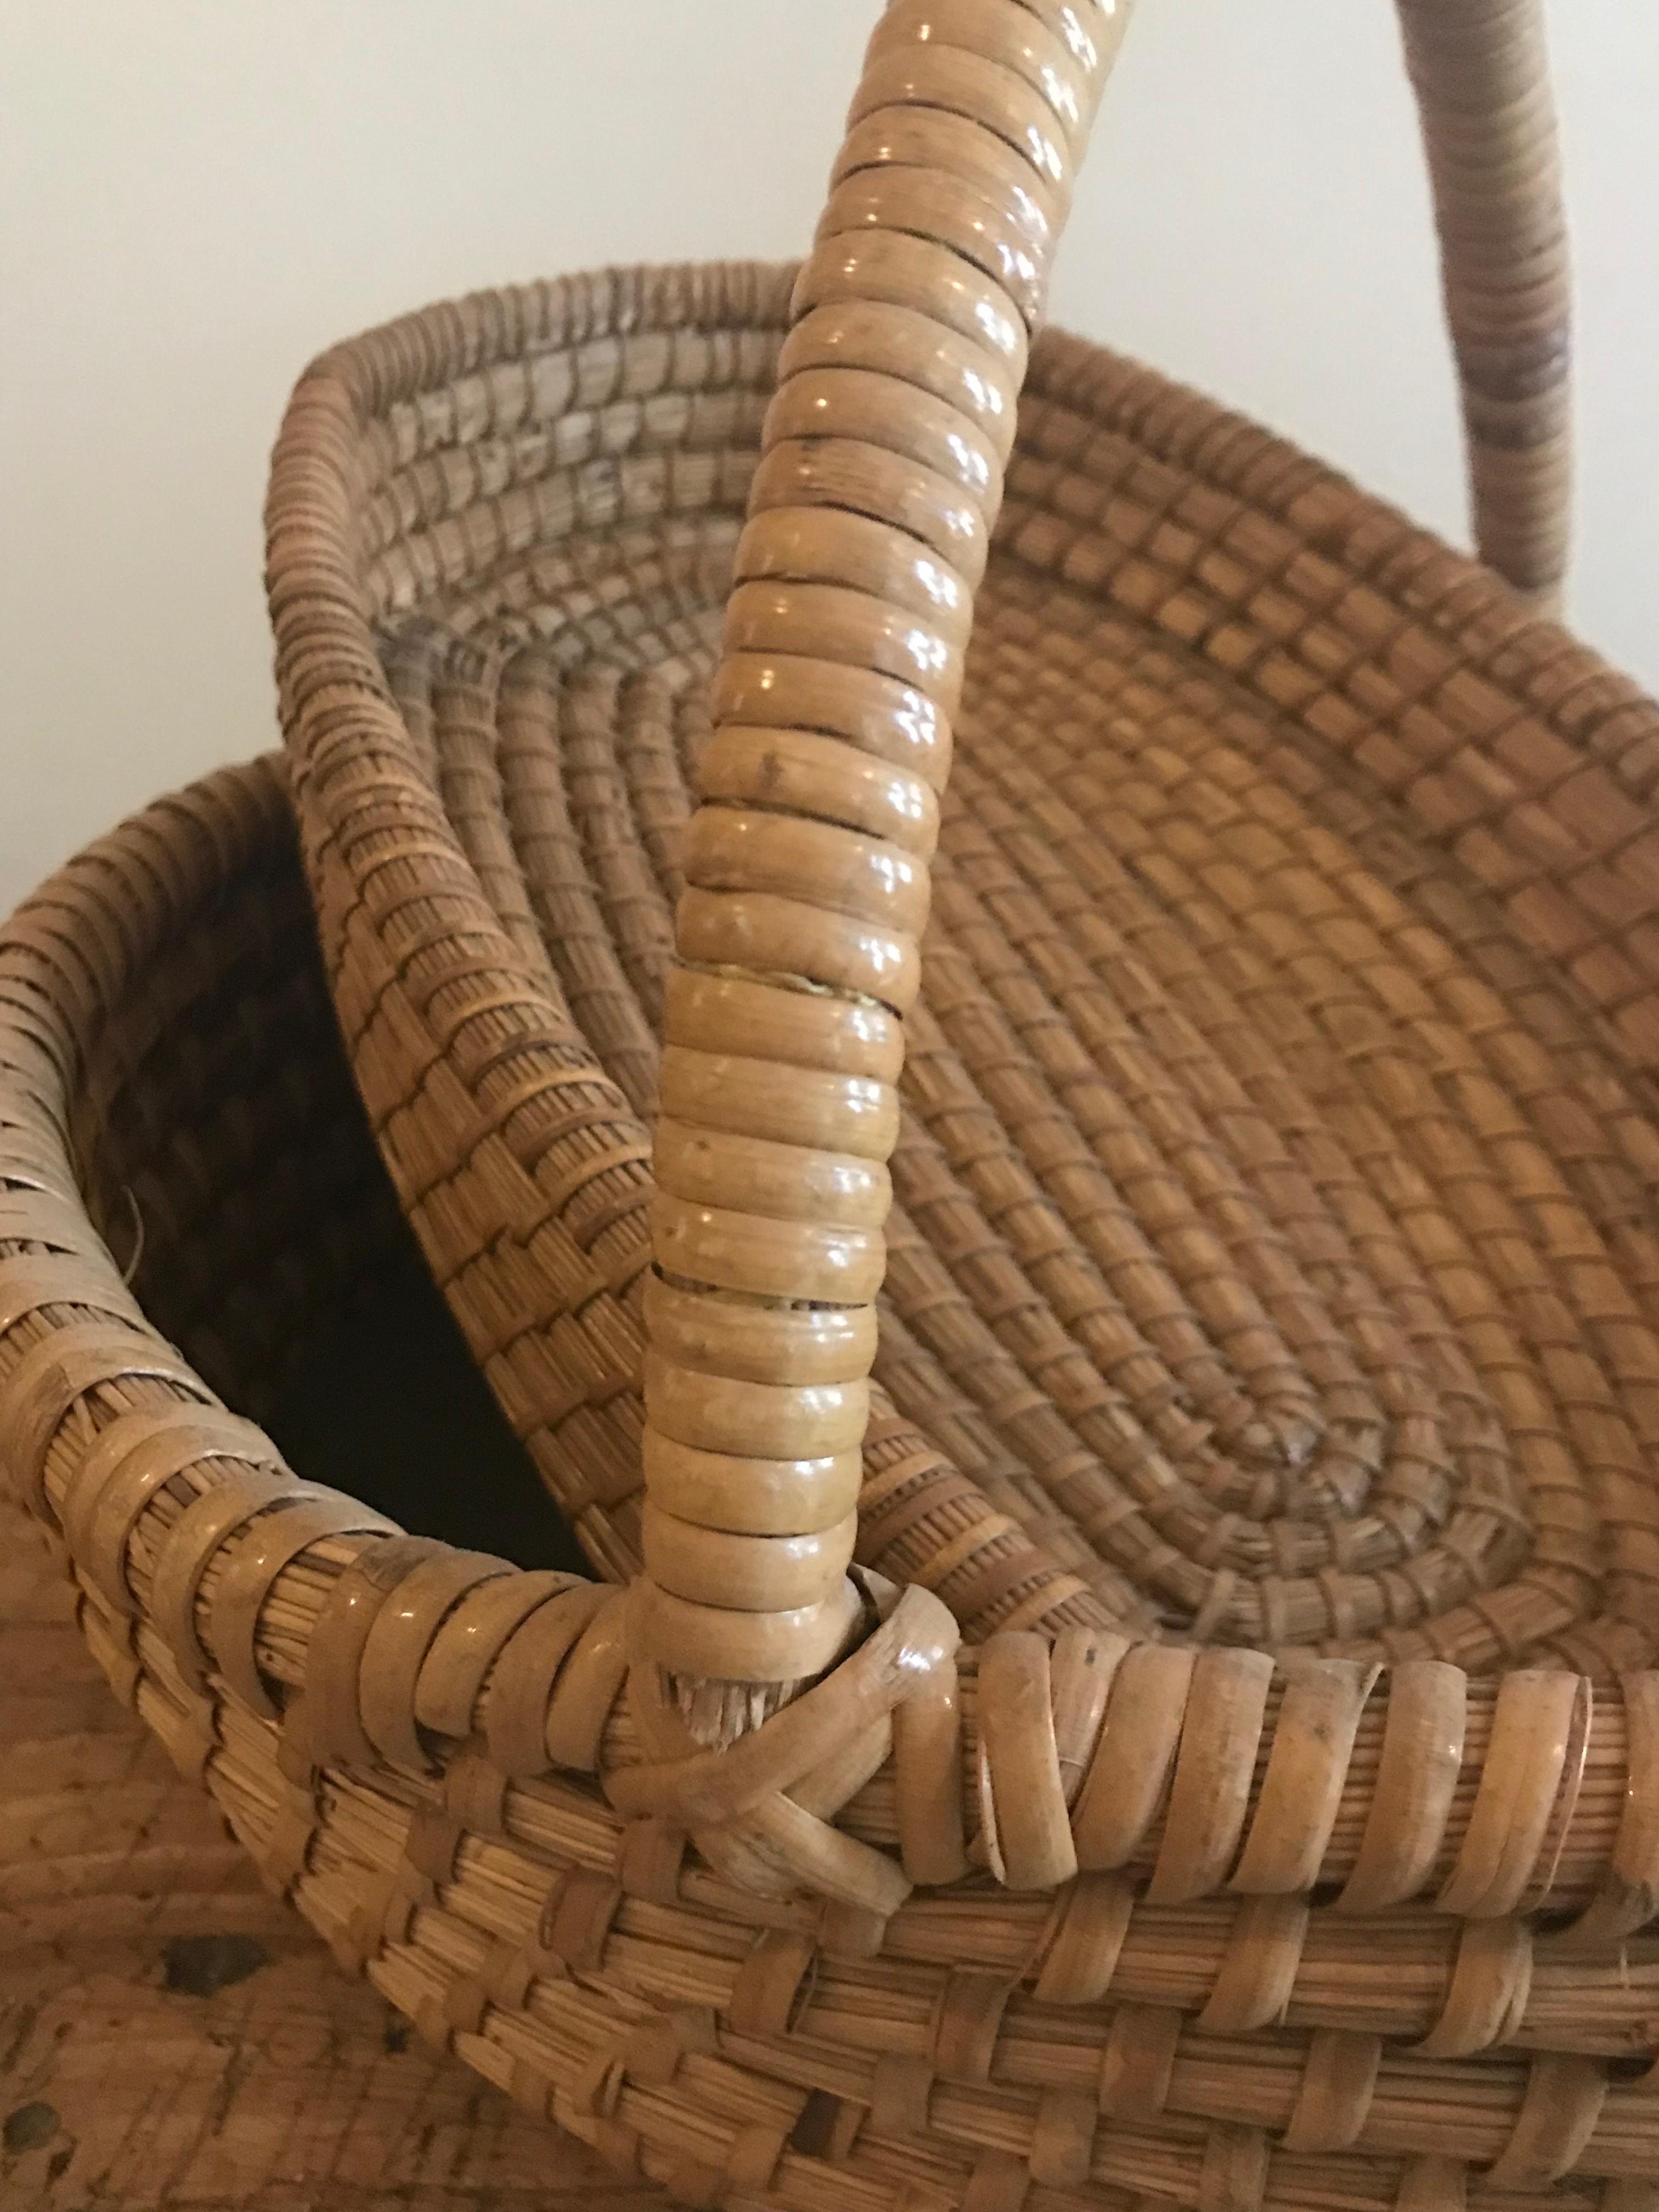 farm baskets for sale